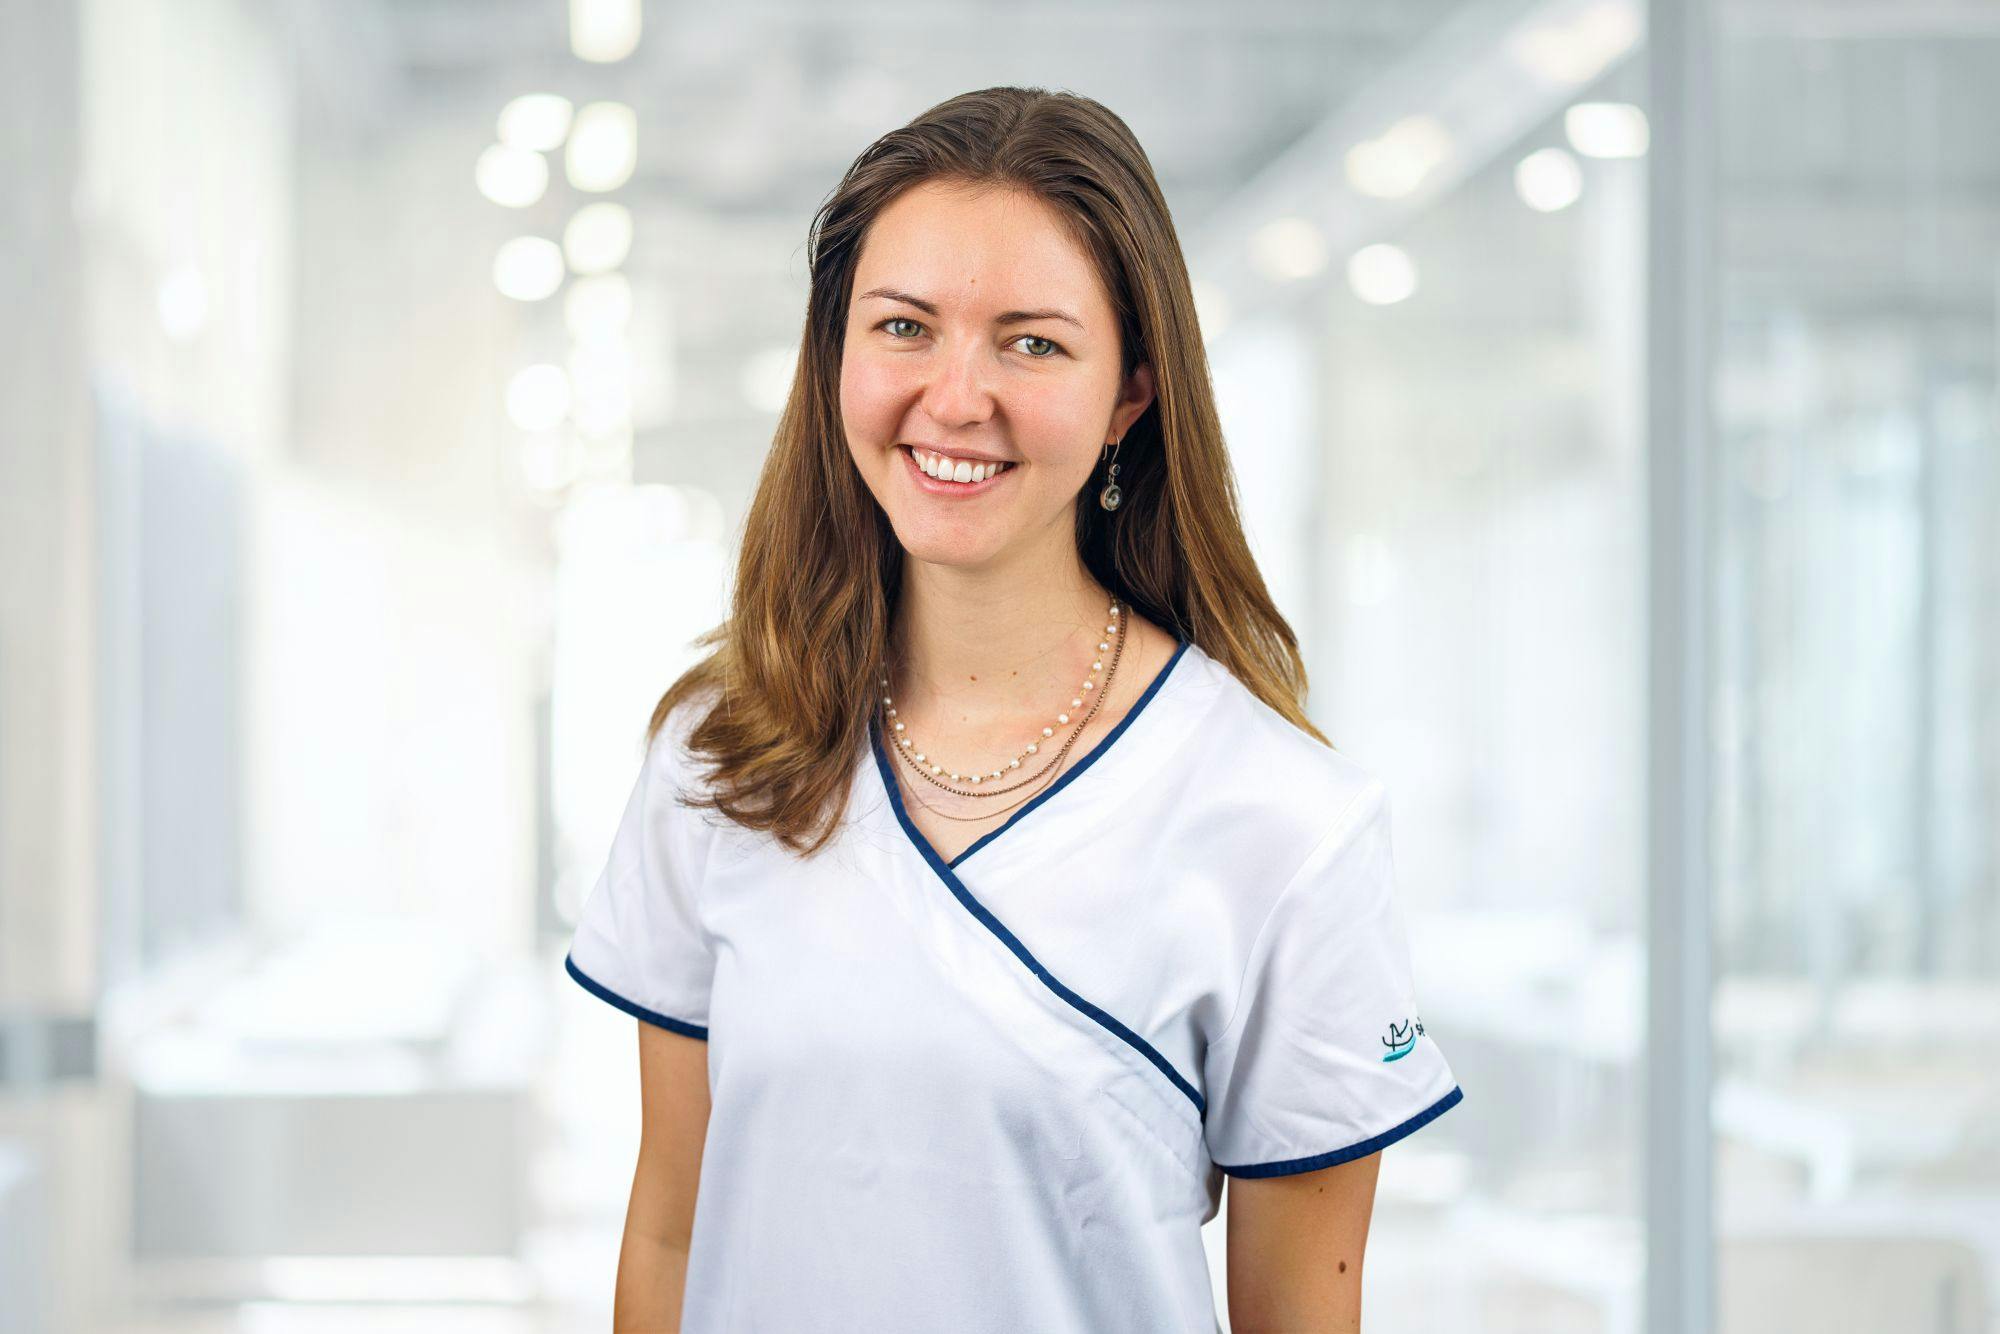 Lächelnde Frau in medizinischer Berufskleidung vor unscharfem Hintergrund.